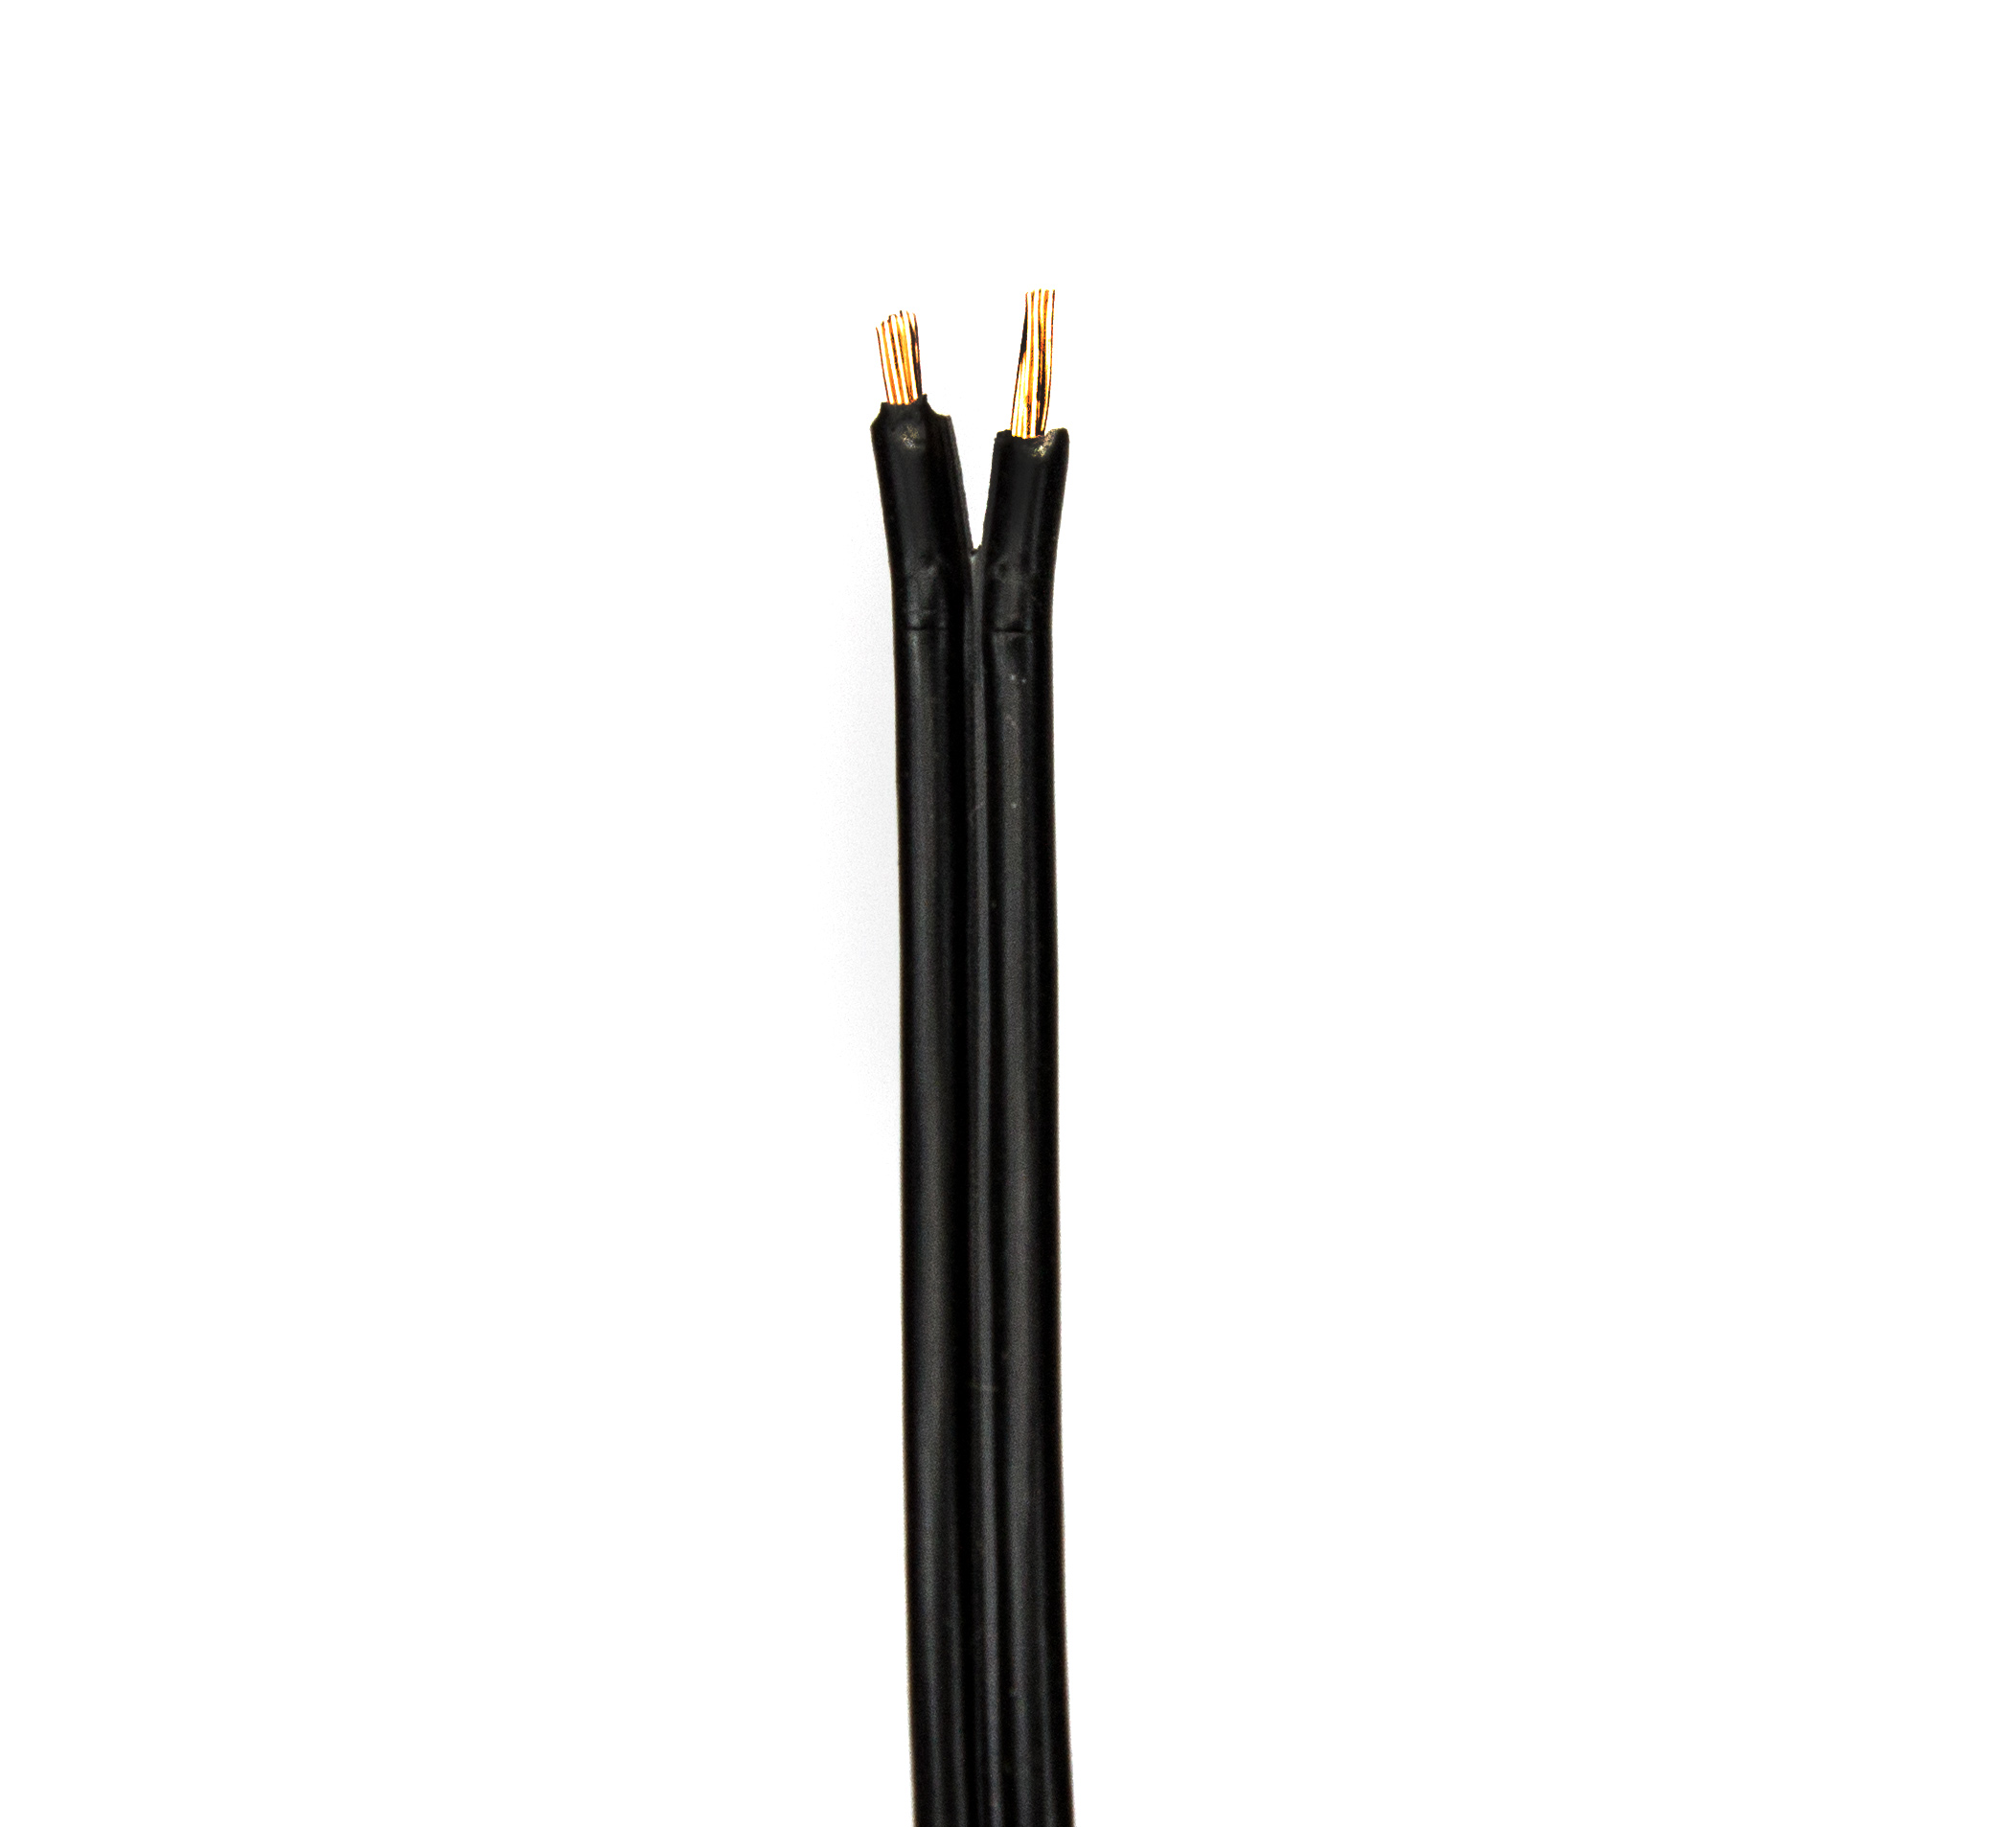 Zwillingslitze 2x 0,4 qmm, LIYZ schwarz, 2-adriges Kabel, flexibles  Litzenkabel, Lautsprecherkabel, Kabel / Stecker / Zubehör, Abverkauf, SHOWTECHNIK